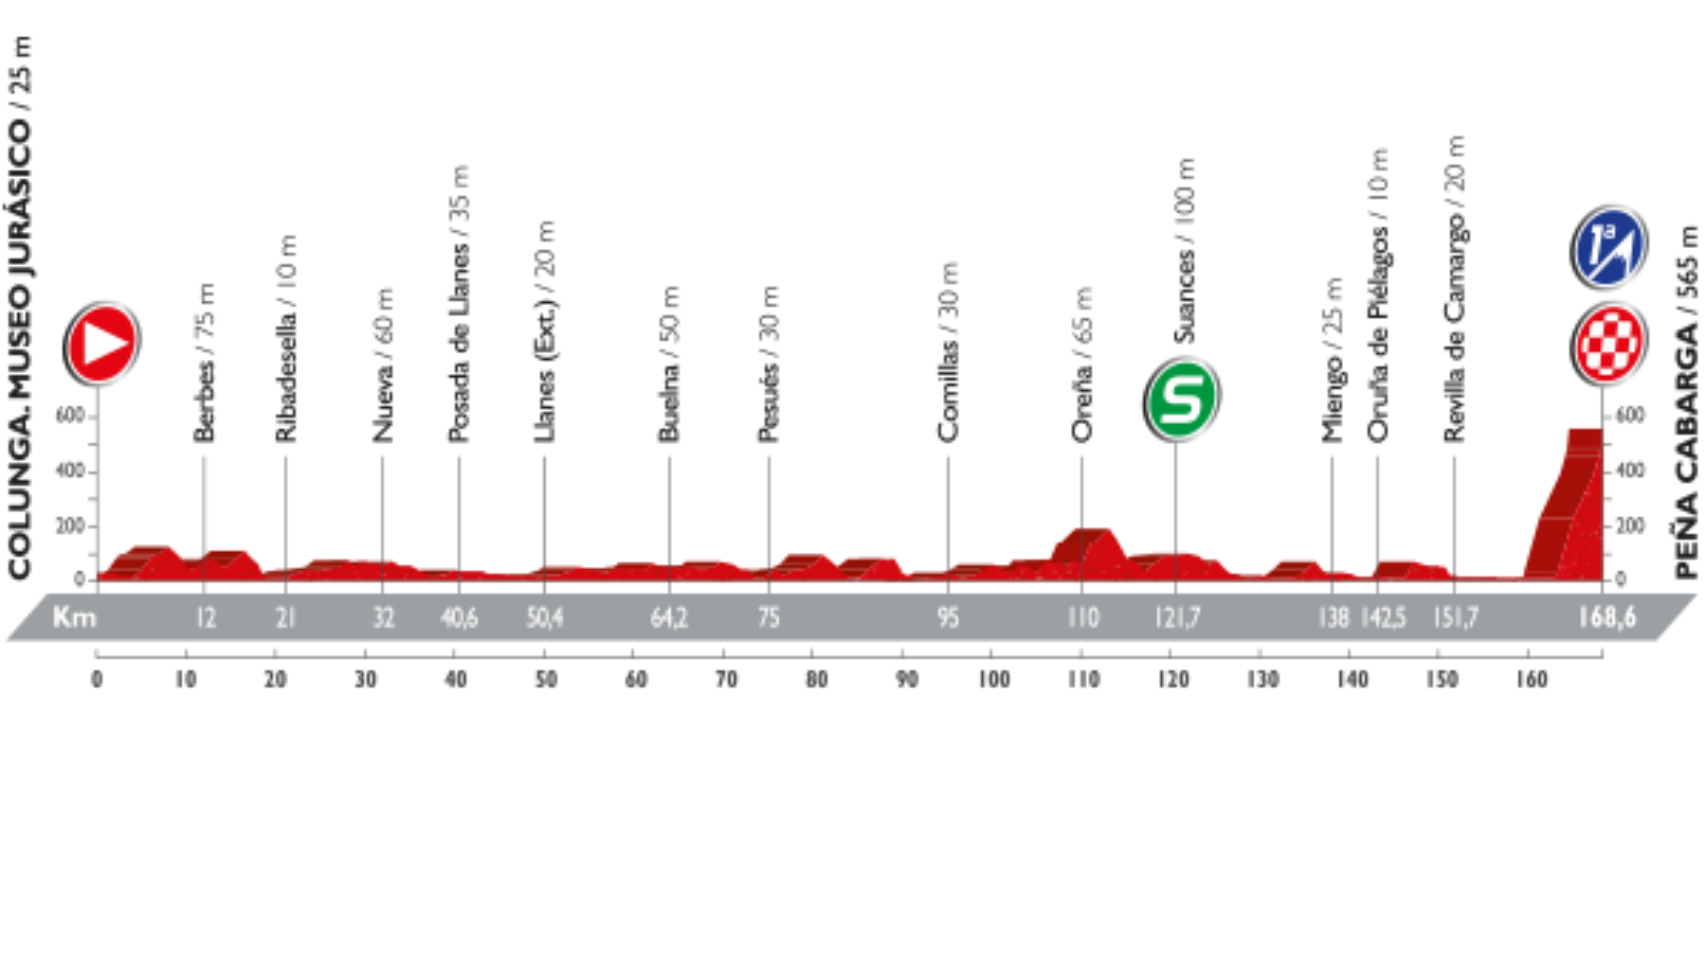 Perfil de la undécima etapa de La Vuelta.